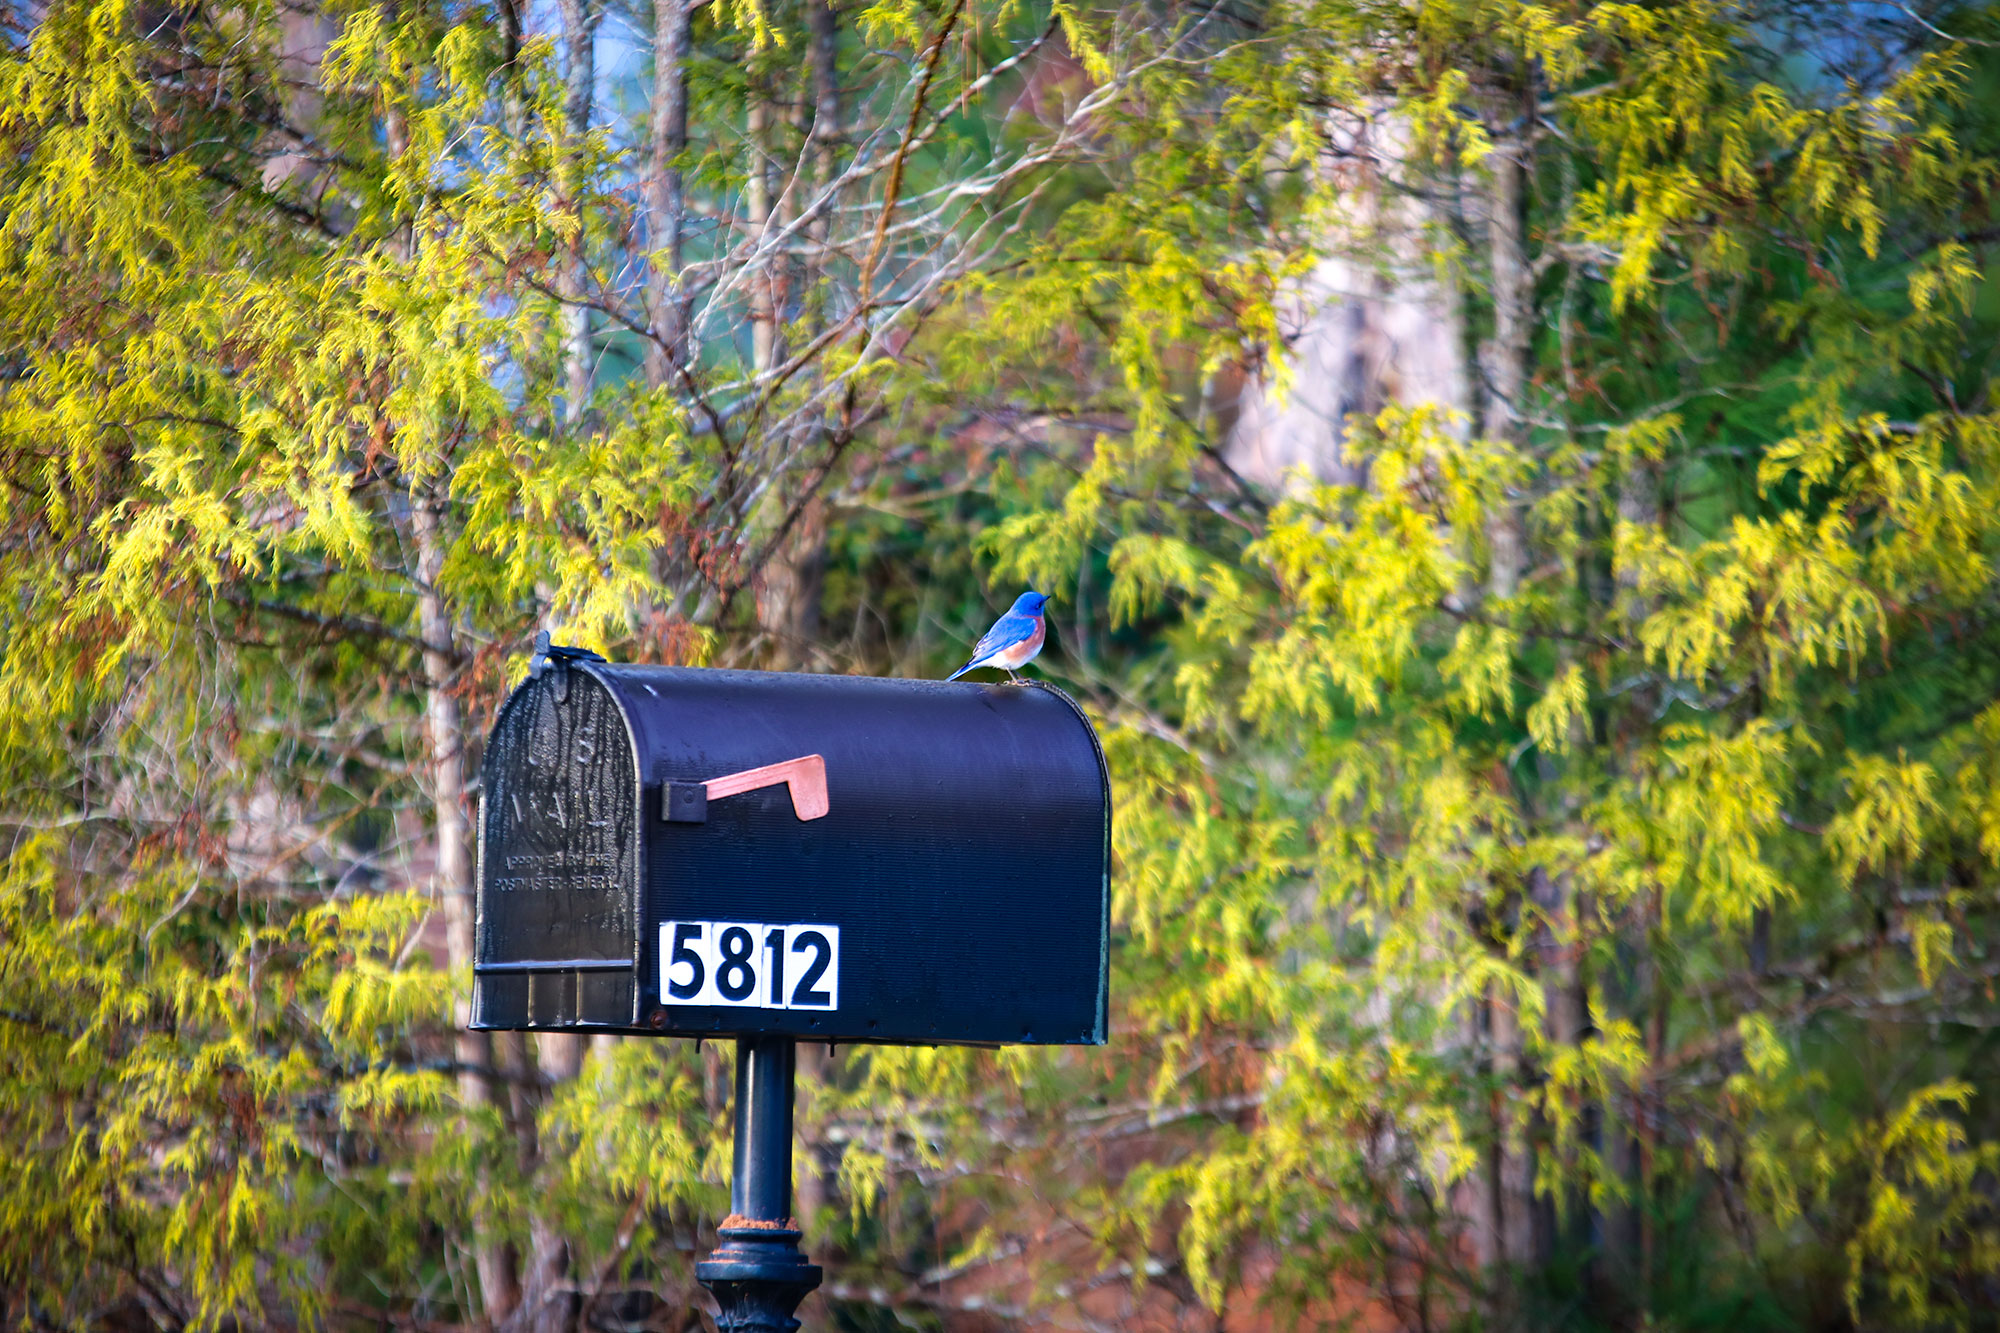 bluebird-considering-new-home-at-savannah-lakes